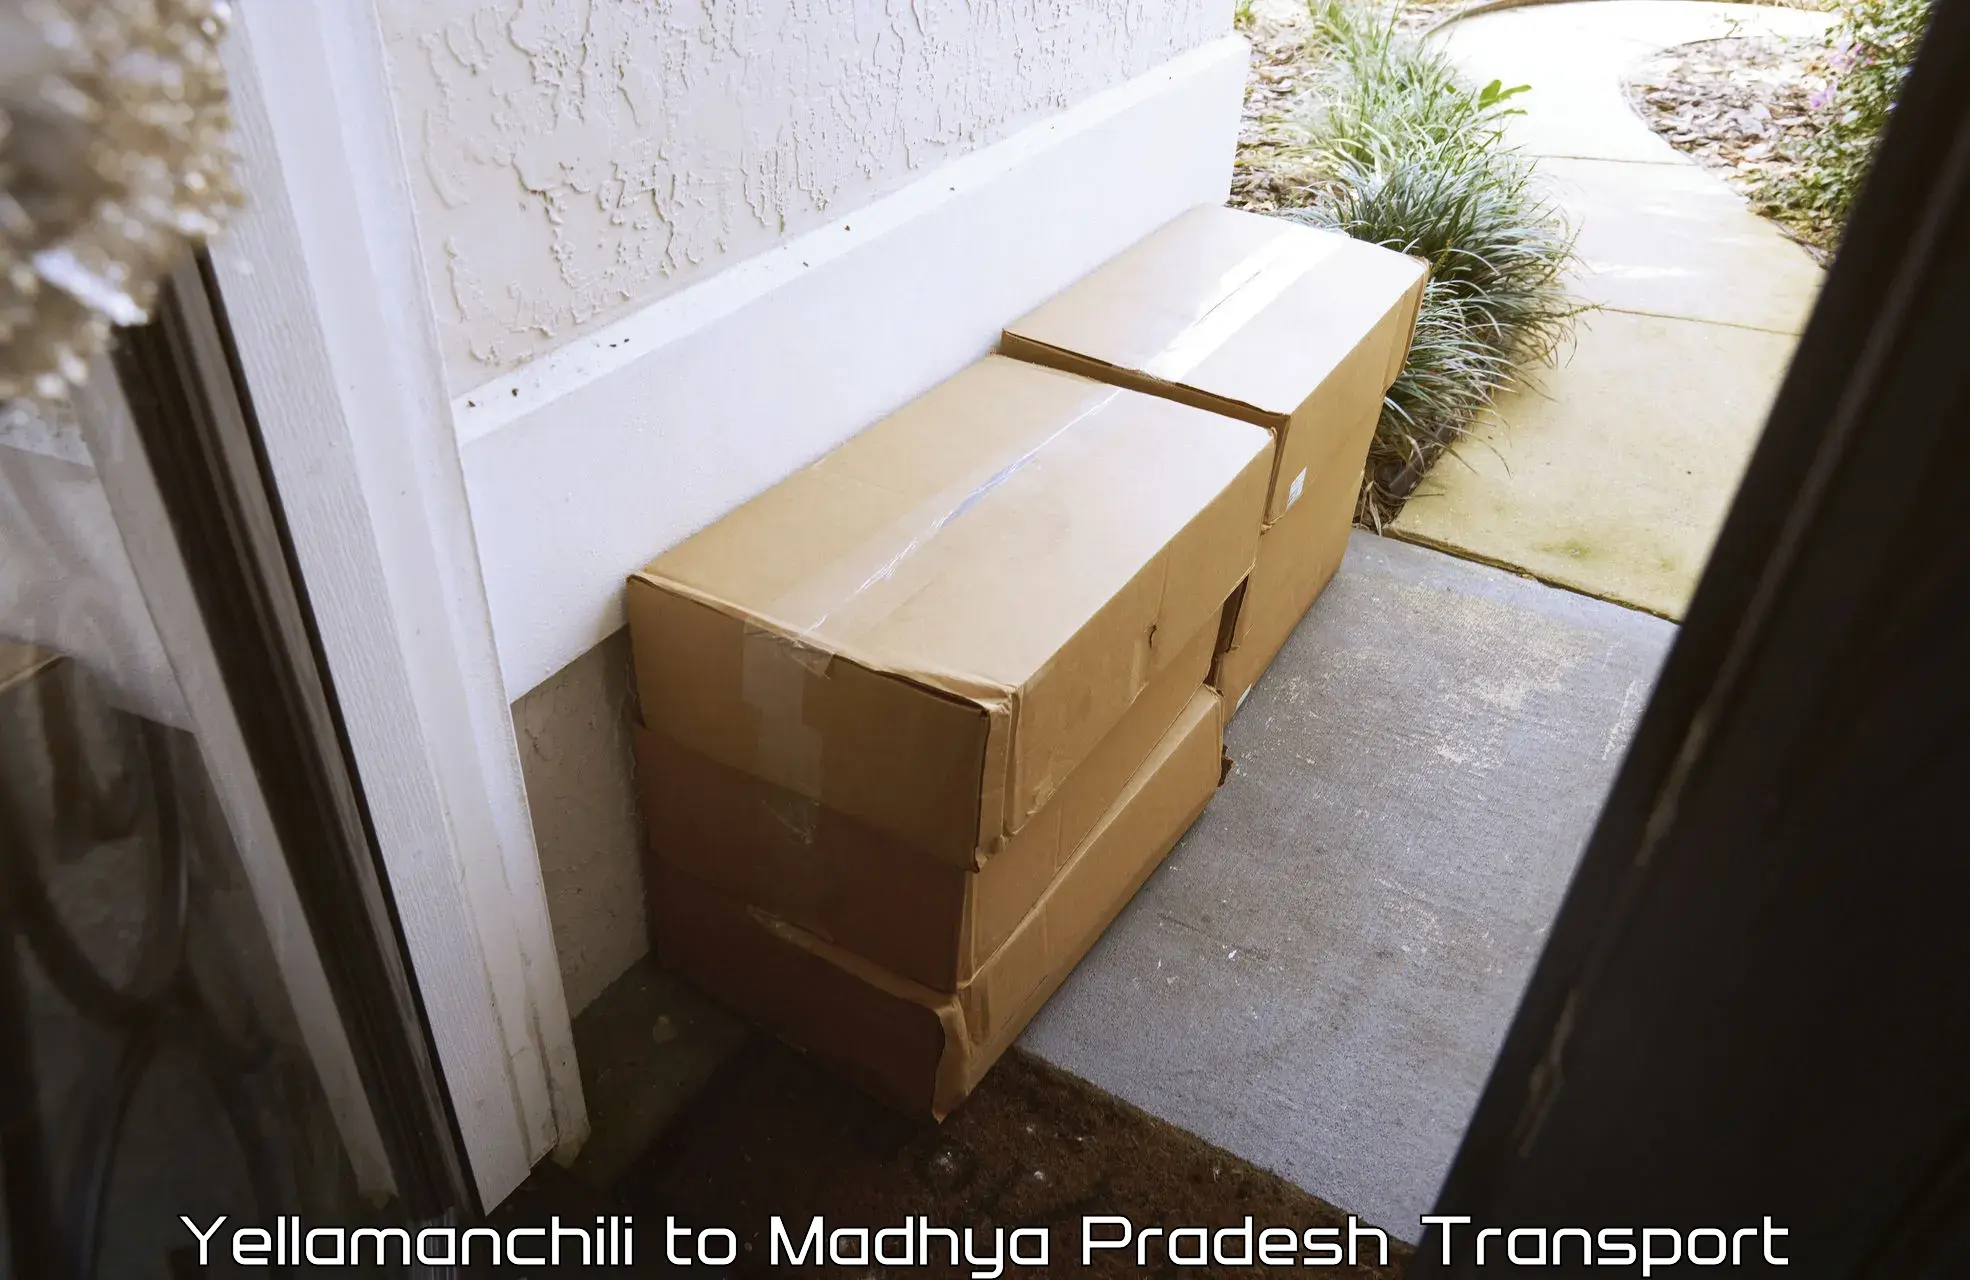 Furniture transport service Yellamanchili to Rampur Baghelan